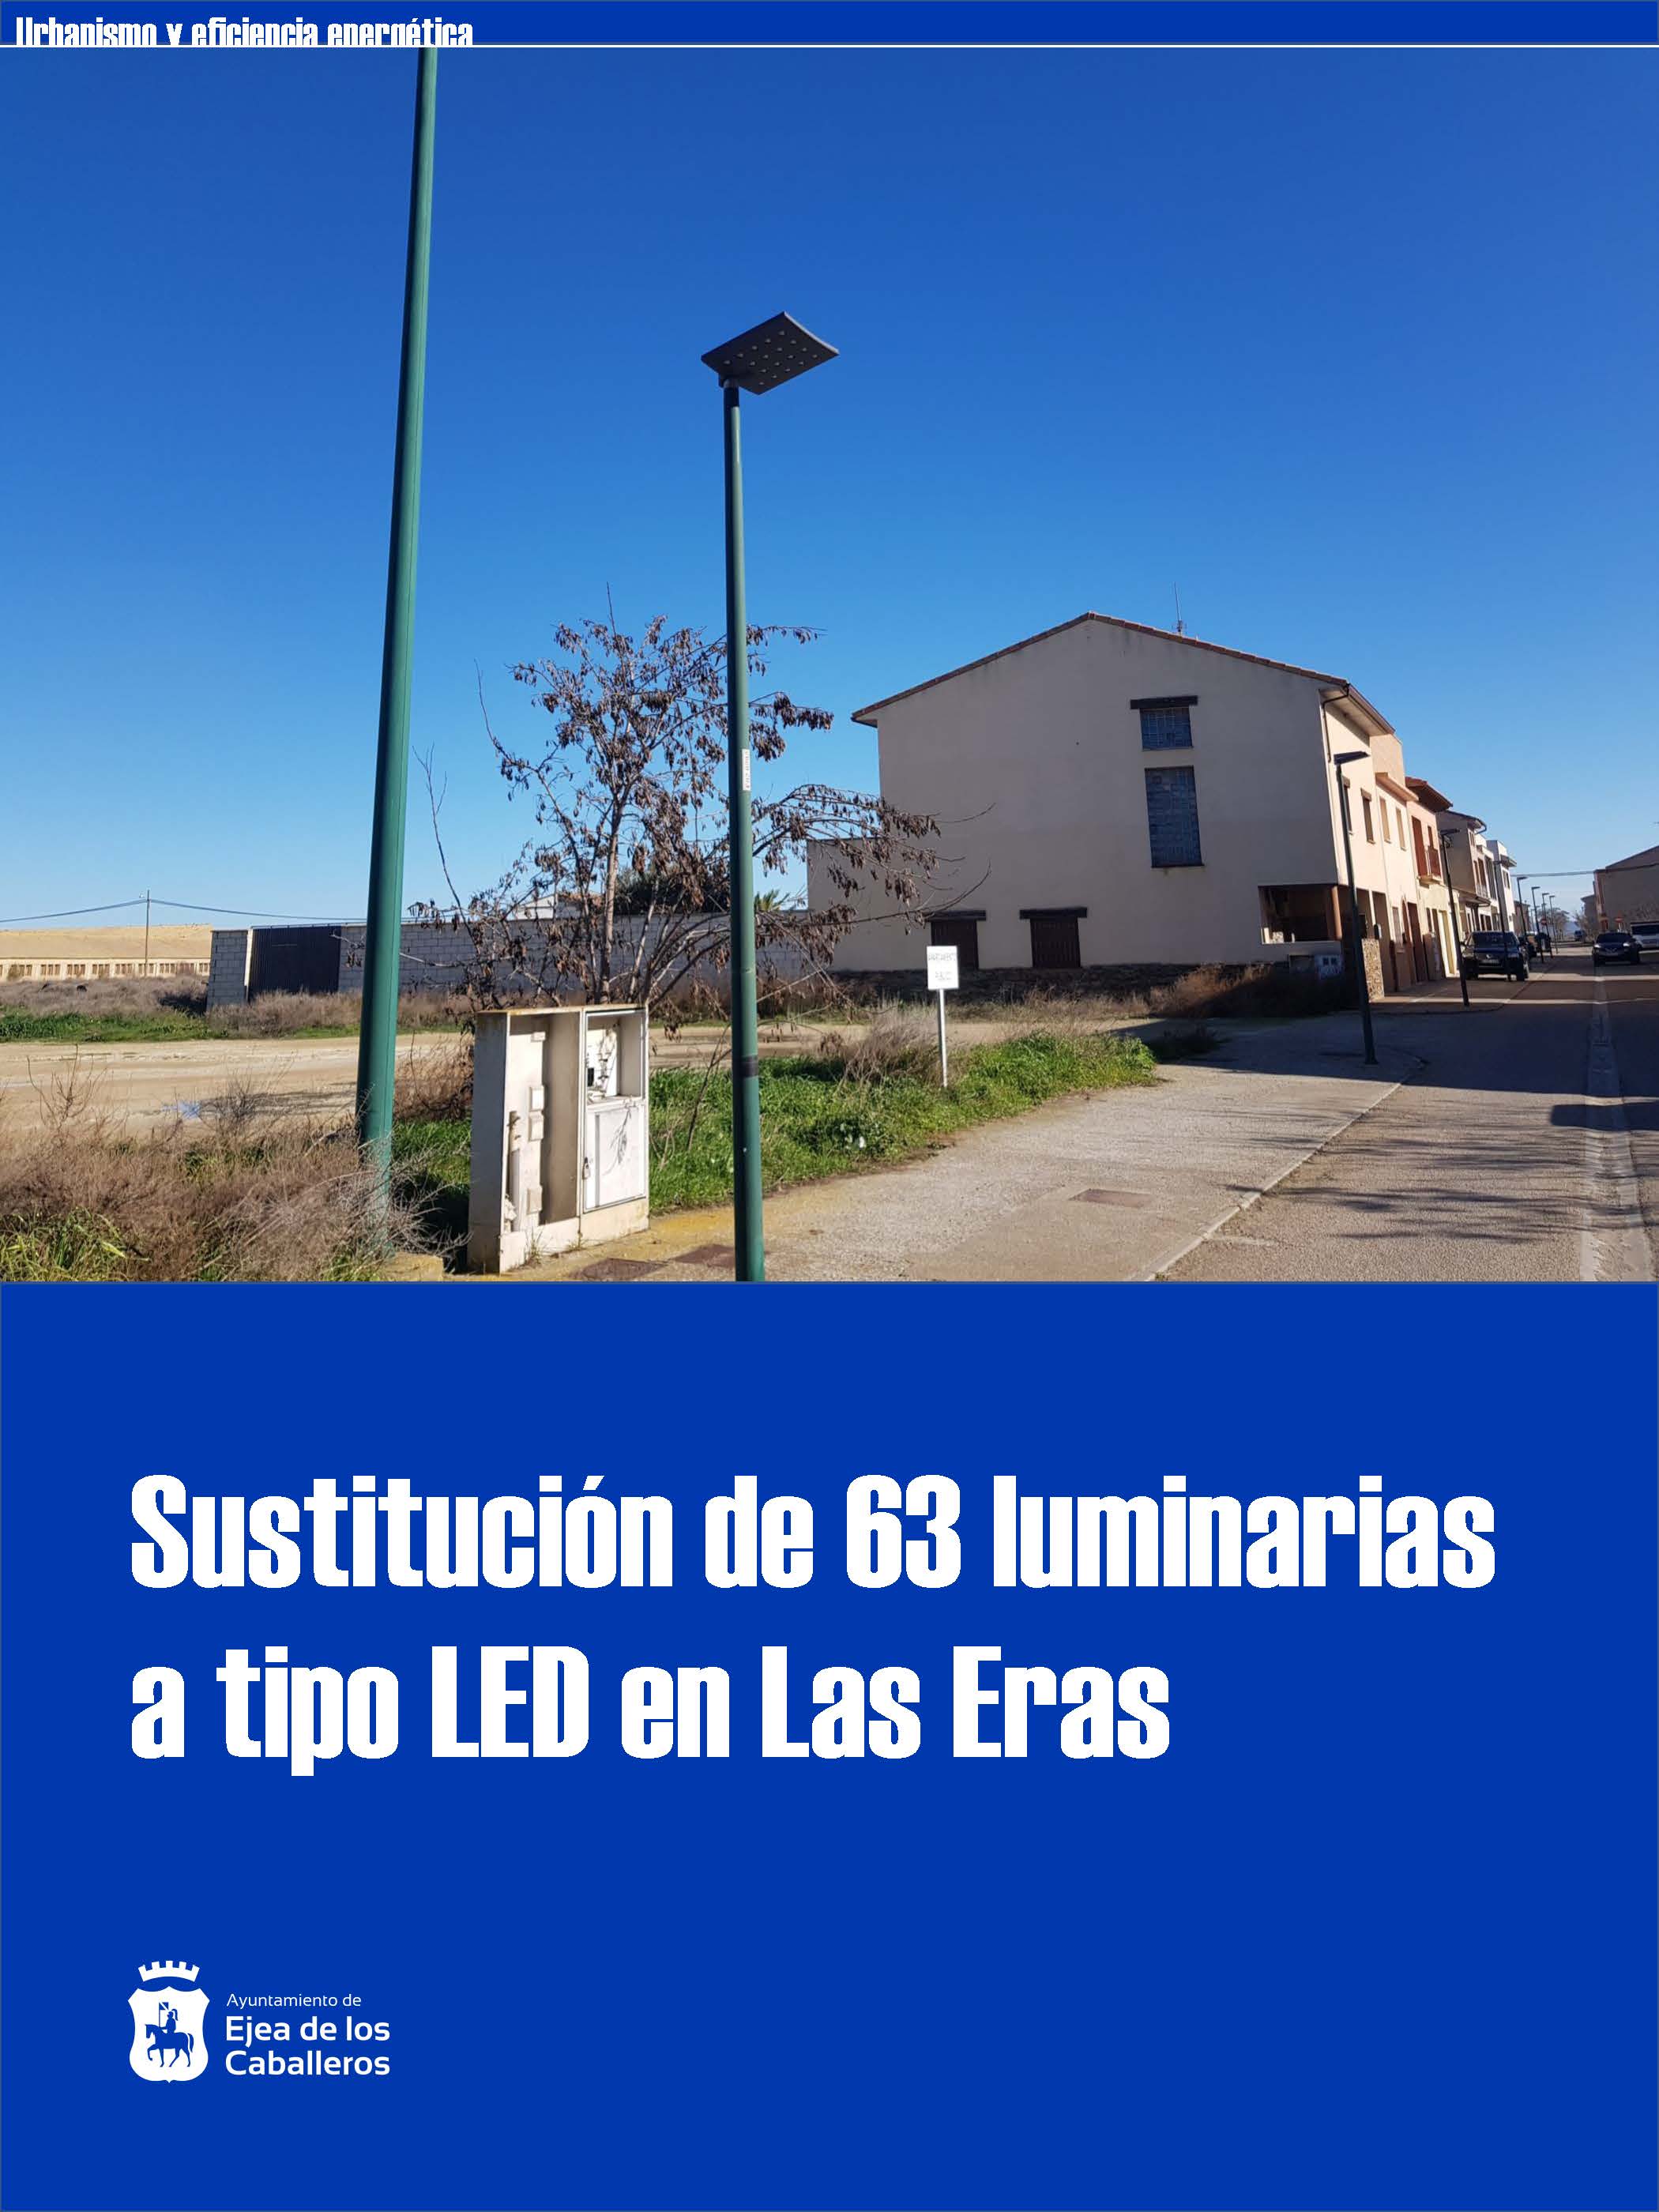 En este momento estás viendo Instalación de nuevas luminarias LED en el barrio de Las Eras de Ejea